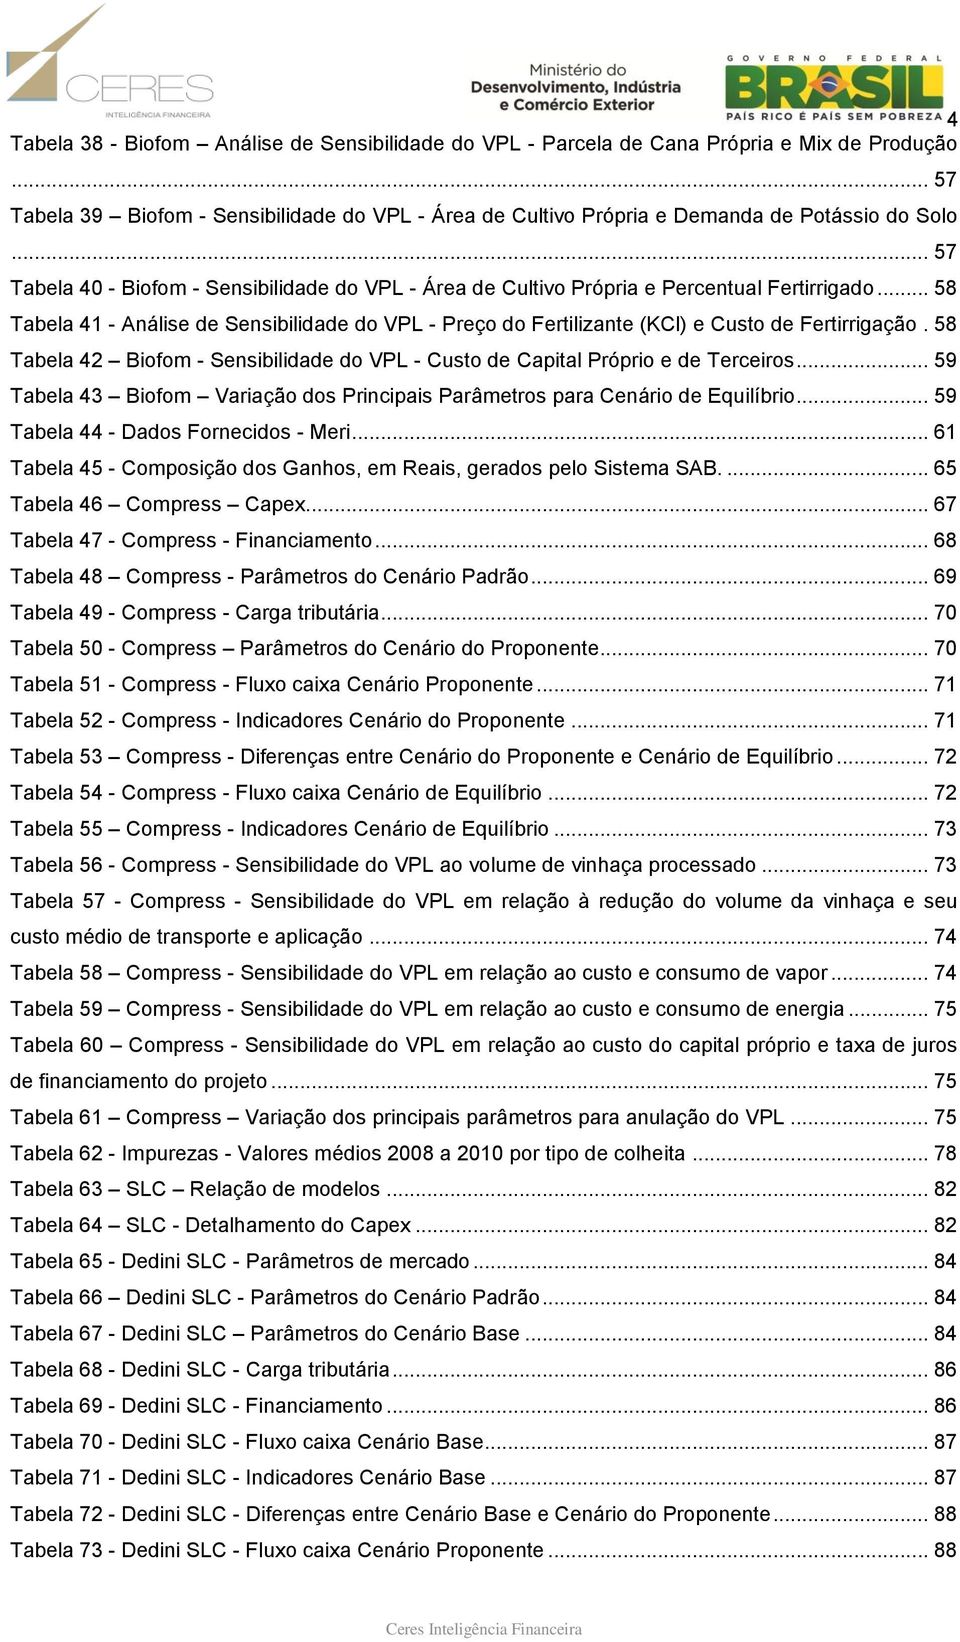 .. 58 Tabela 41 - Análise de Sensibilidade do VPL - Preço do Fertilizante (KCl) e Custo de Fertirrigação. 58 Tabela 42 Biofom - Sensibilidade do VPL - Custo de Capital Próprio e de Terceiros.